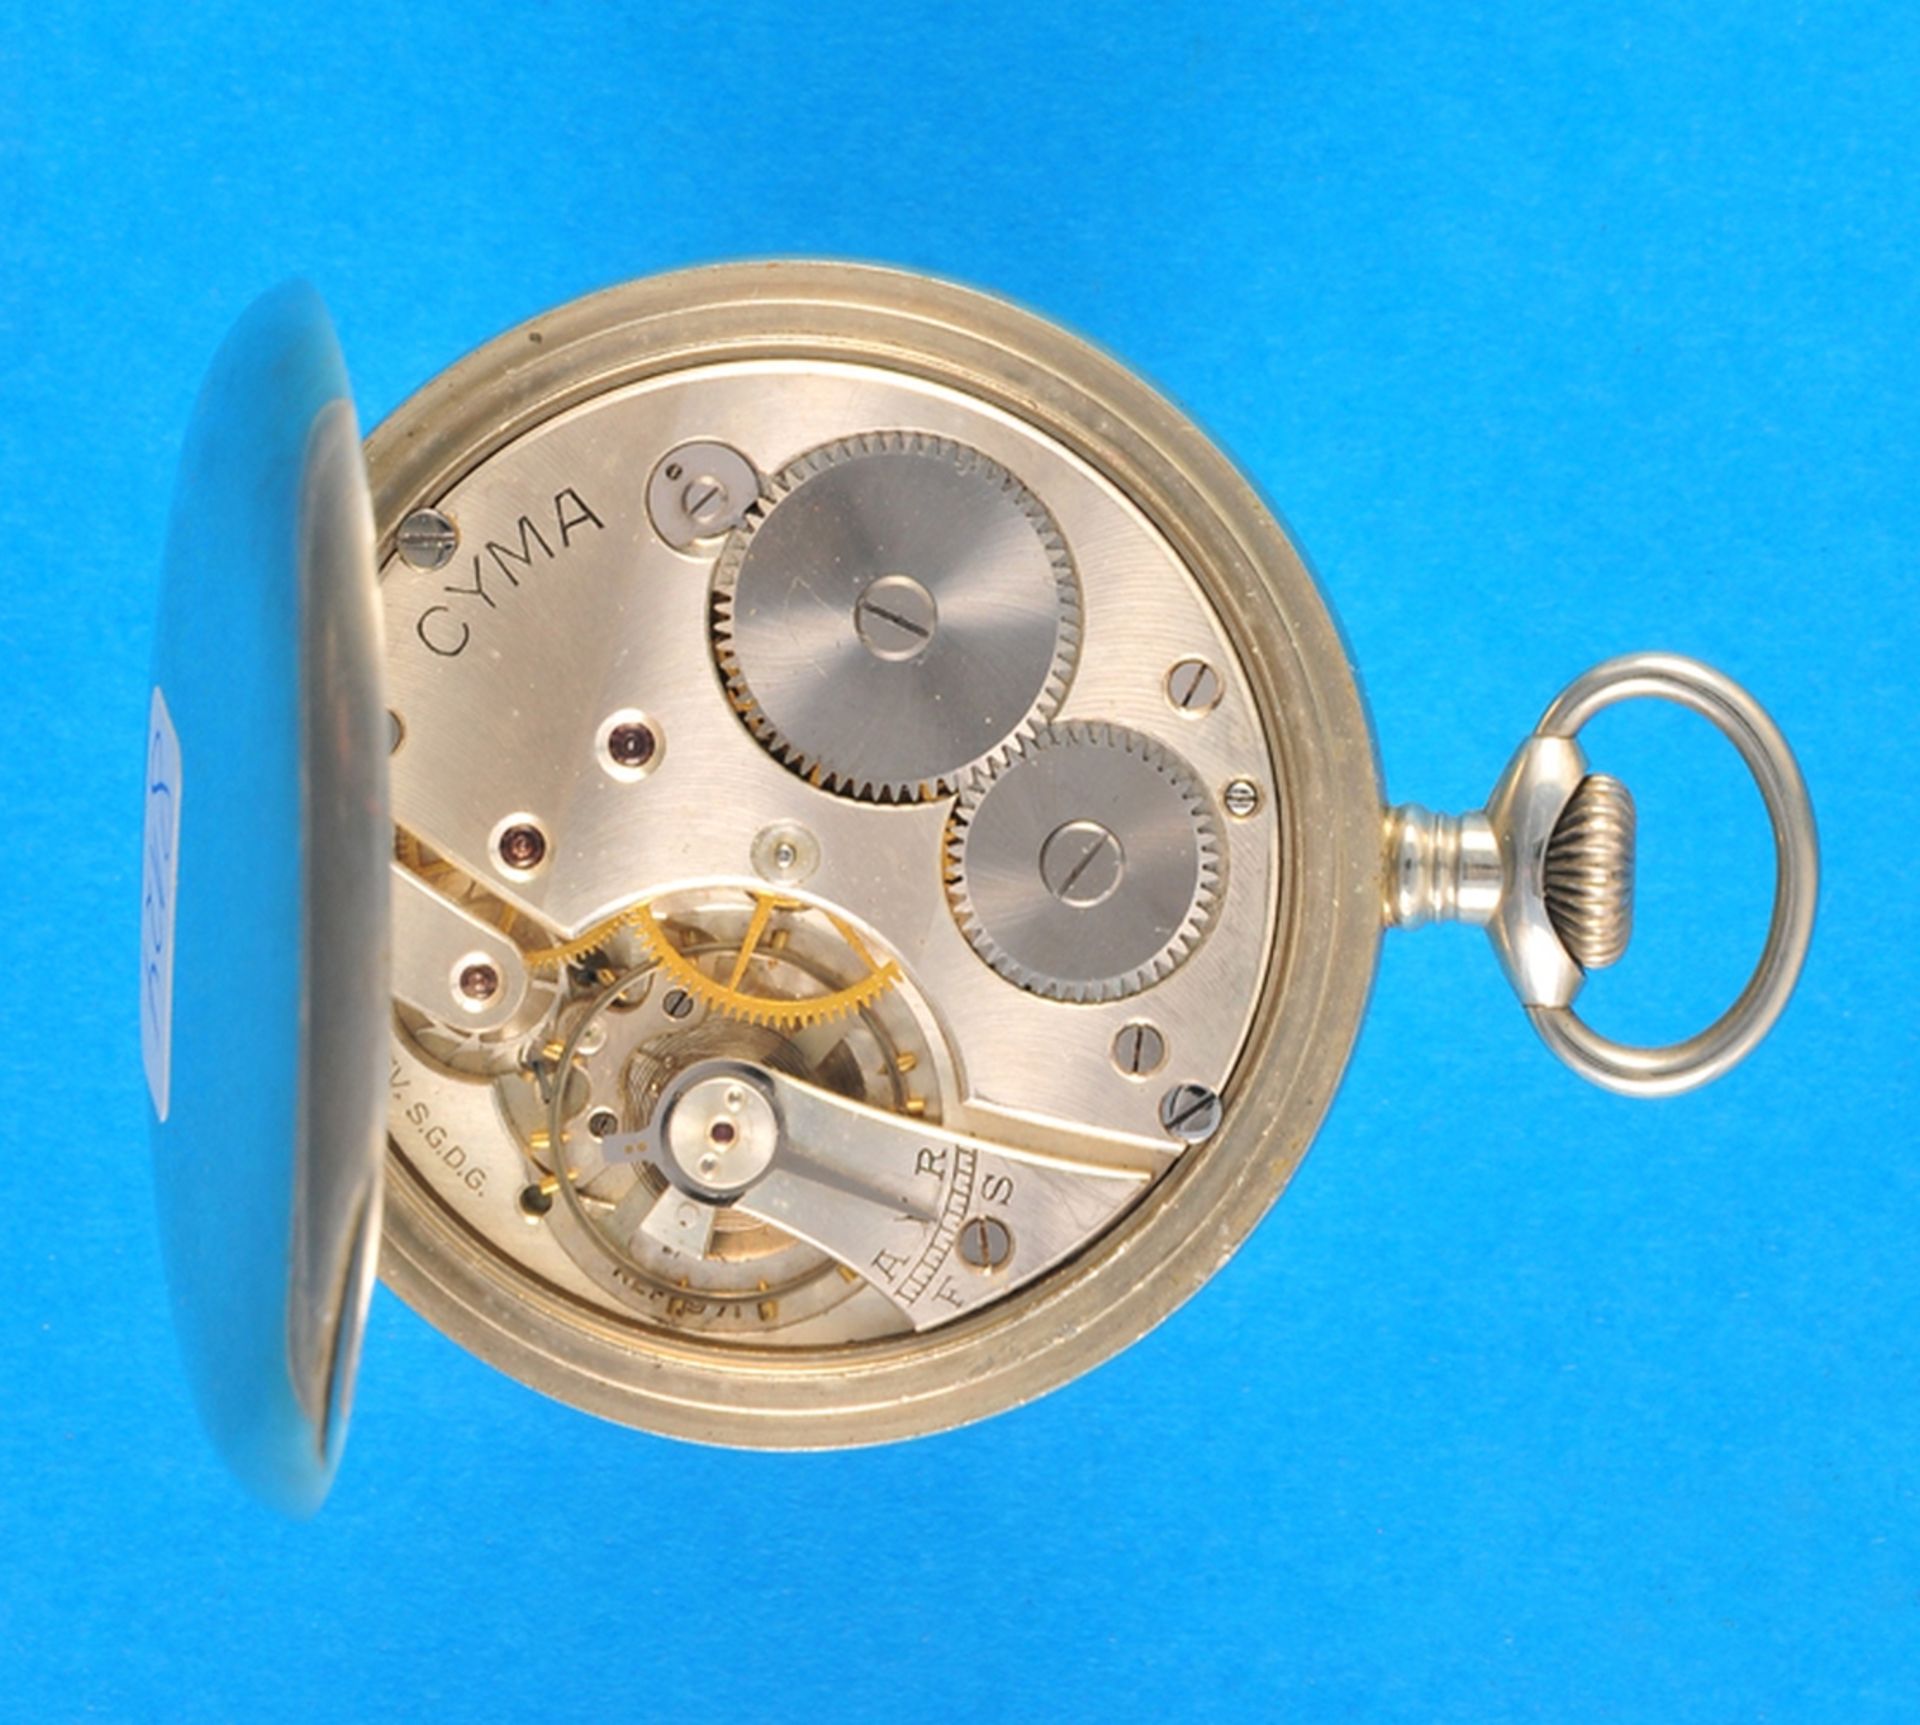 Tavannes Watch Co., metal pocket watch - Bild 2 aus 2